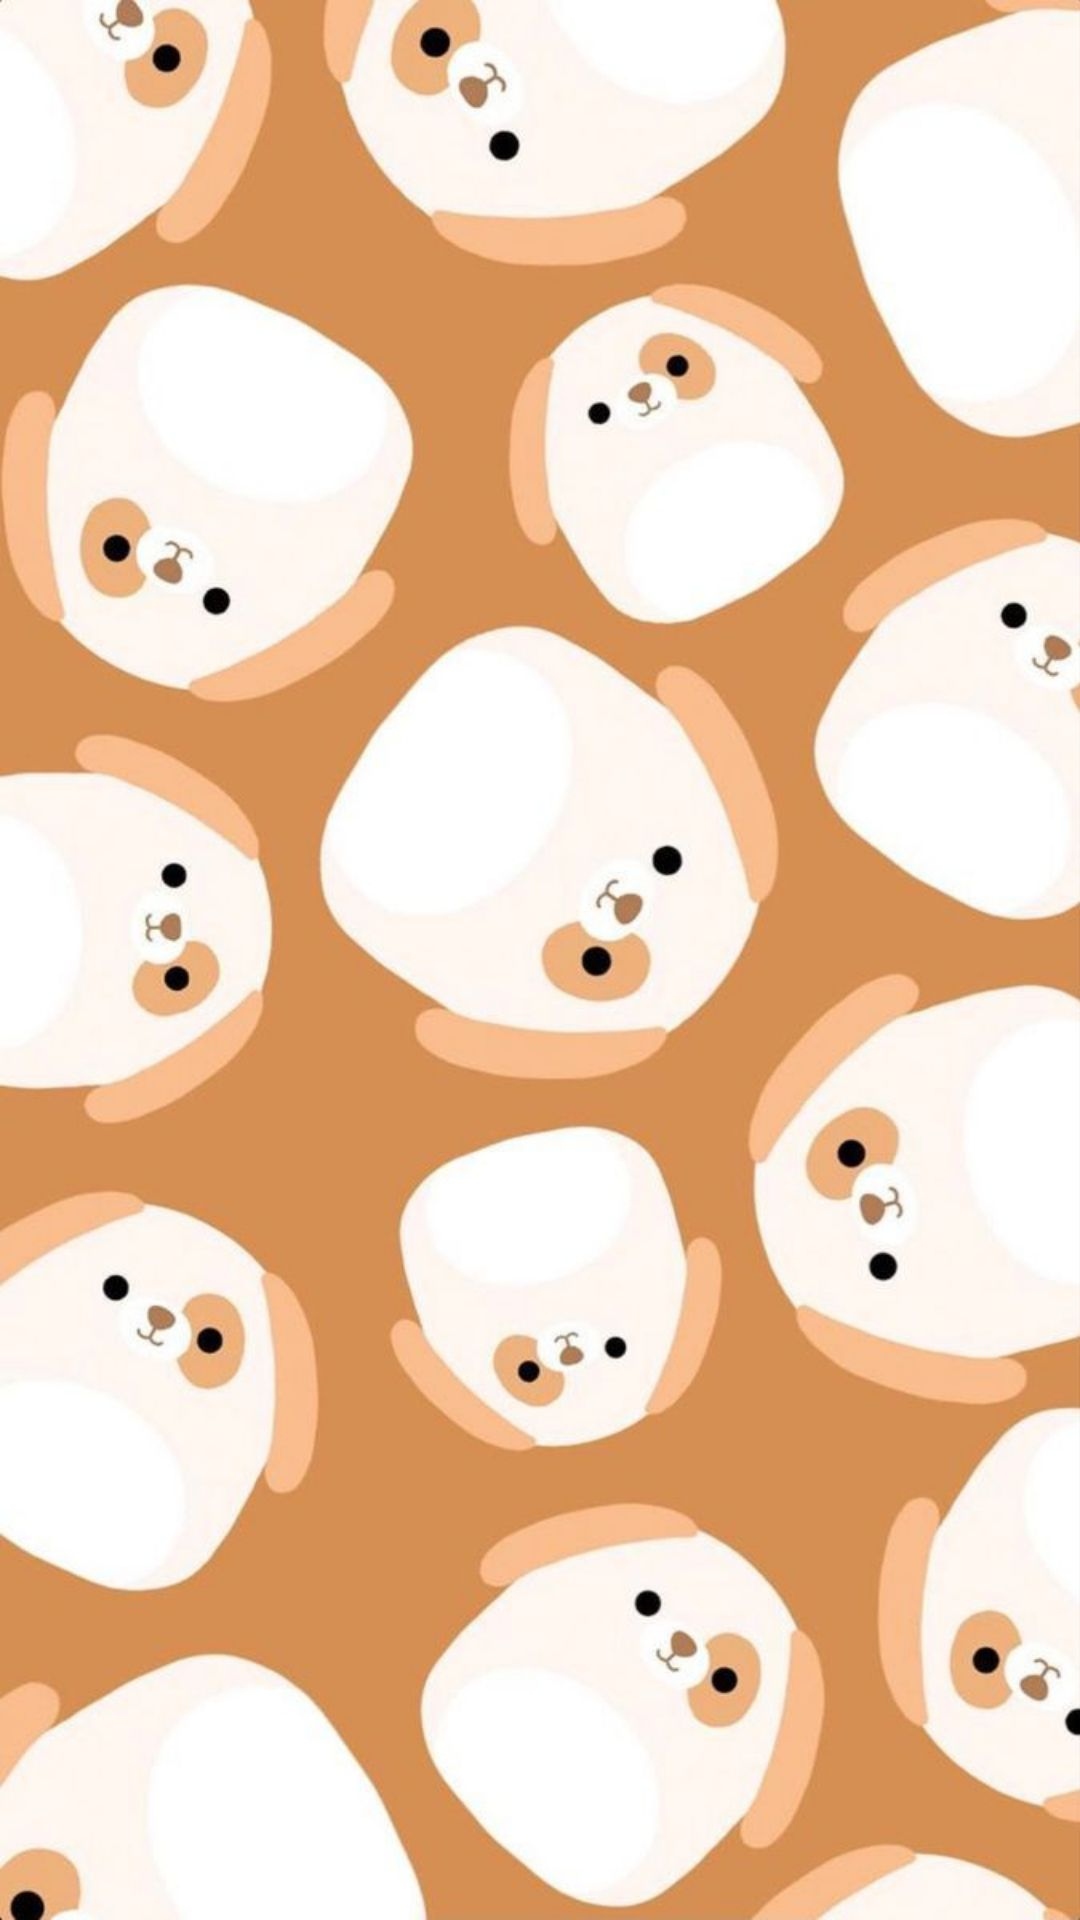 Squishmallows Wallpaper